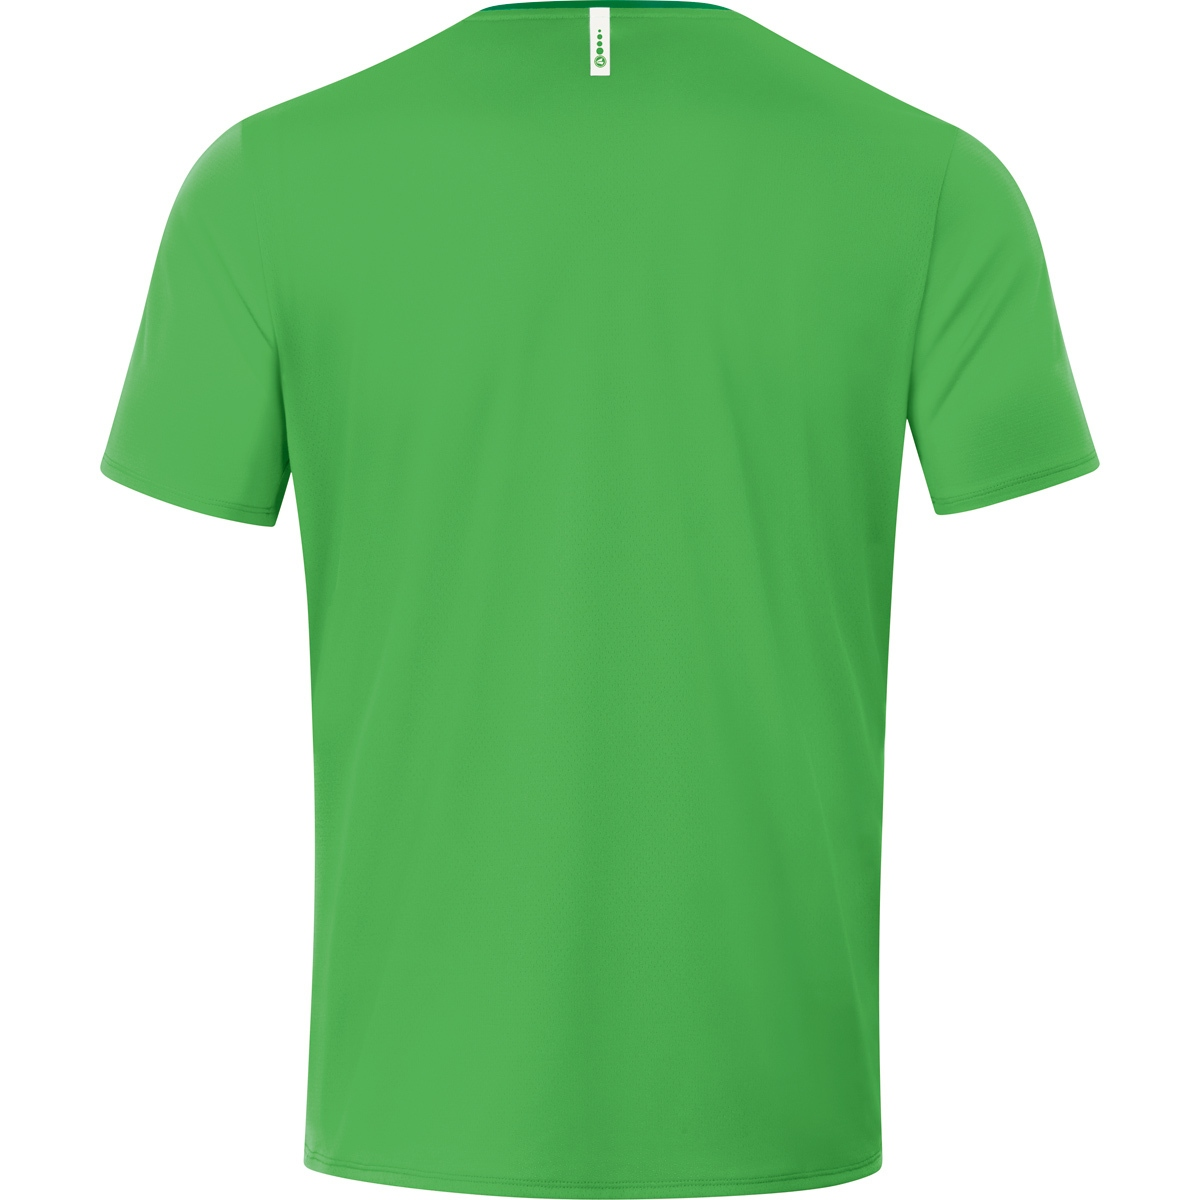 T-Shirt JAKO Gr. 6120 soft green/sportgrün, XL, 2.0 Champ Herren,